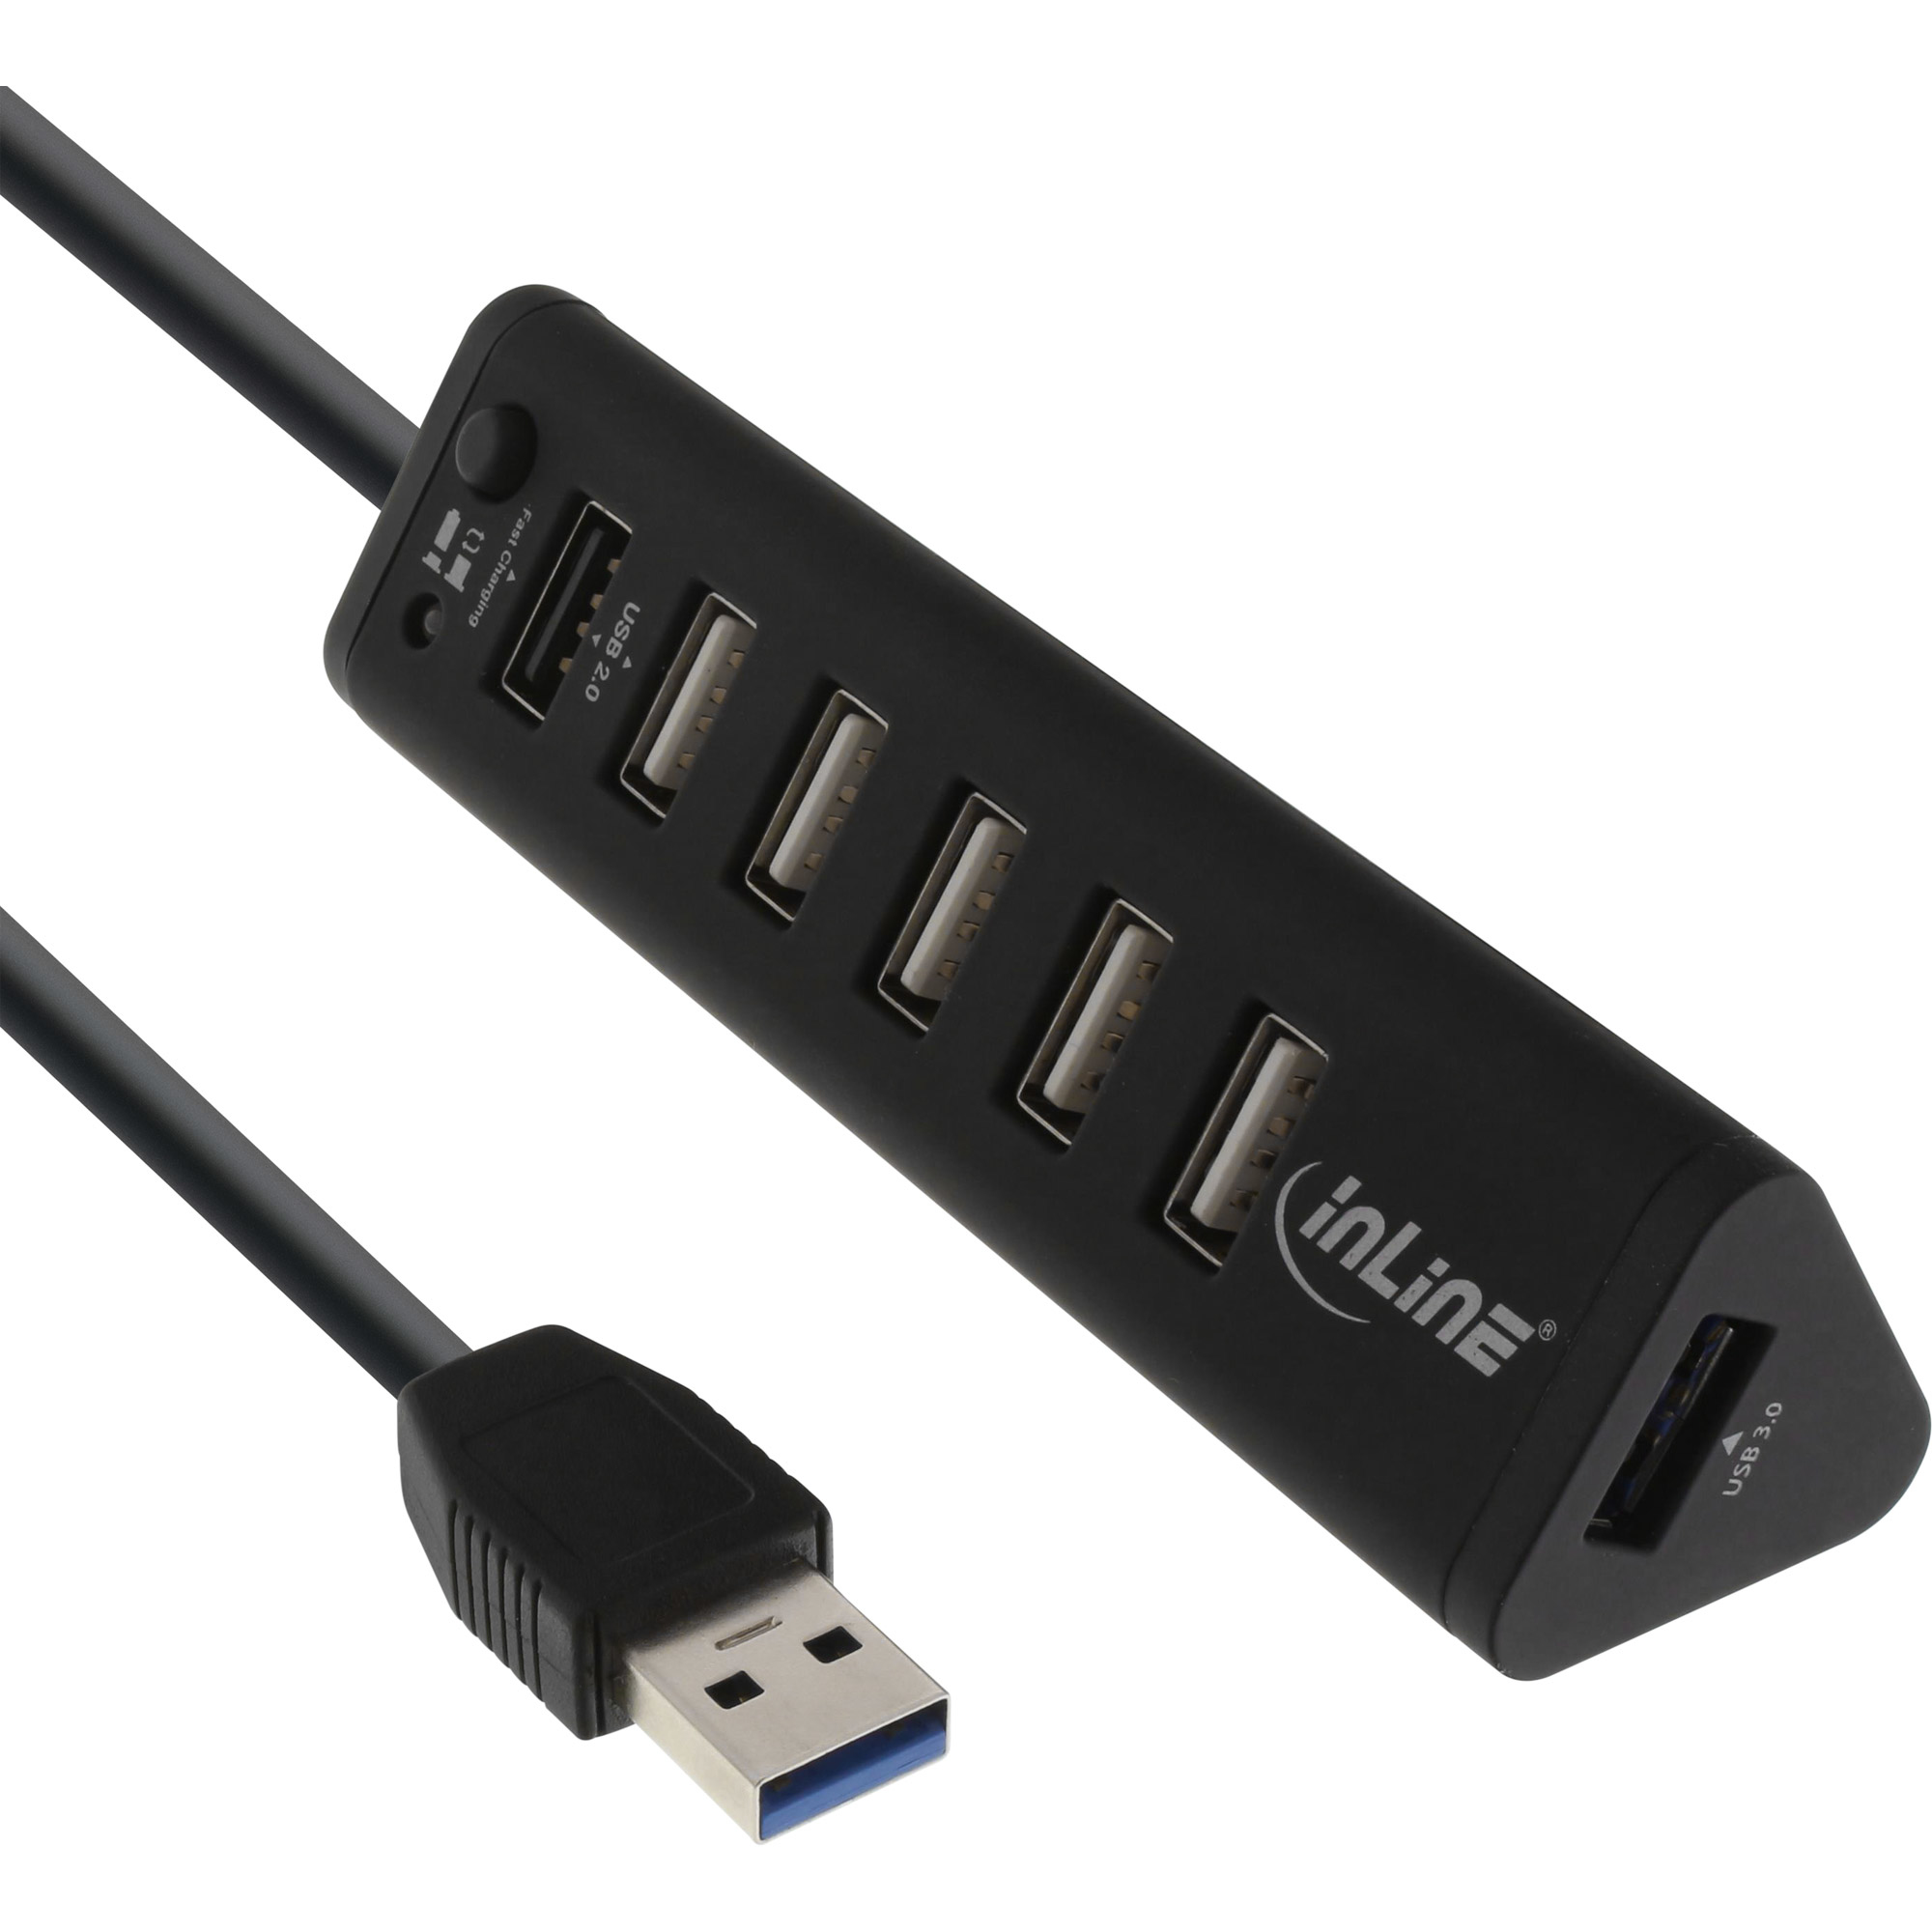 InLine Hub - Smart - 1 x SuperSpeed USB 3.0 + 6 x USB 2.0 + 1 x USB